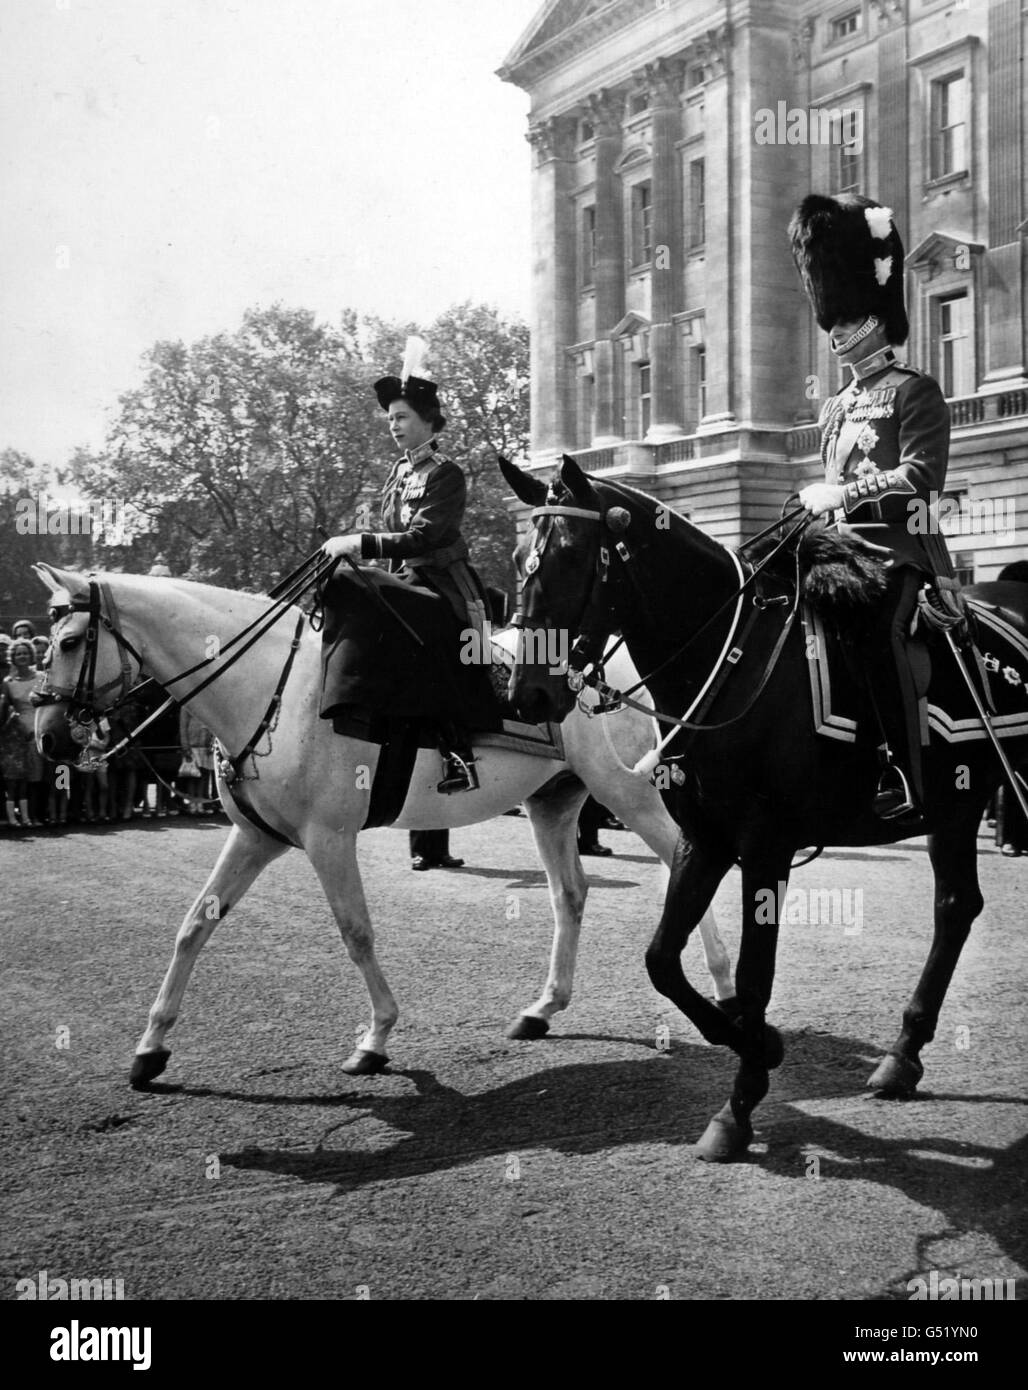 La reine Elizabeth II à cheval sur un nouveau mont, un cheval de police gris nommé Doctor, quitte le palais de Buckingham avec le duc d'Édimbourg pour la cérémonie de Trooping the Color sur la parade des gardes à cheval. Banque D'Images